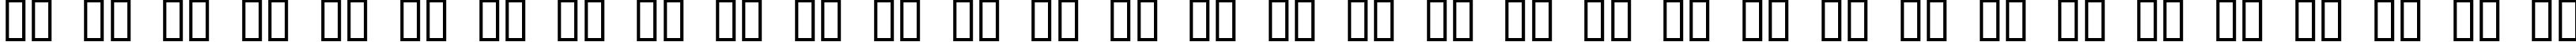 Пример написания русского алфавита шрифтом Brushed